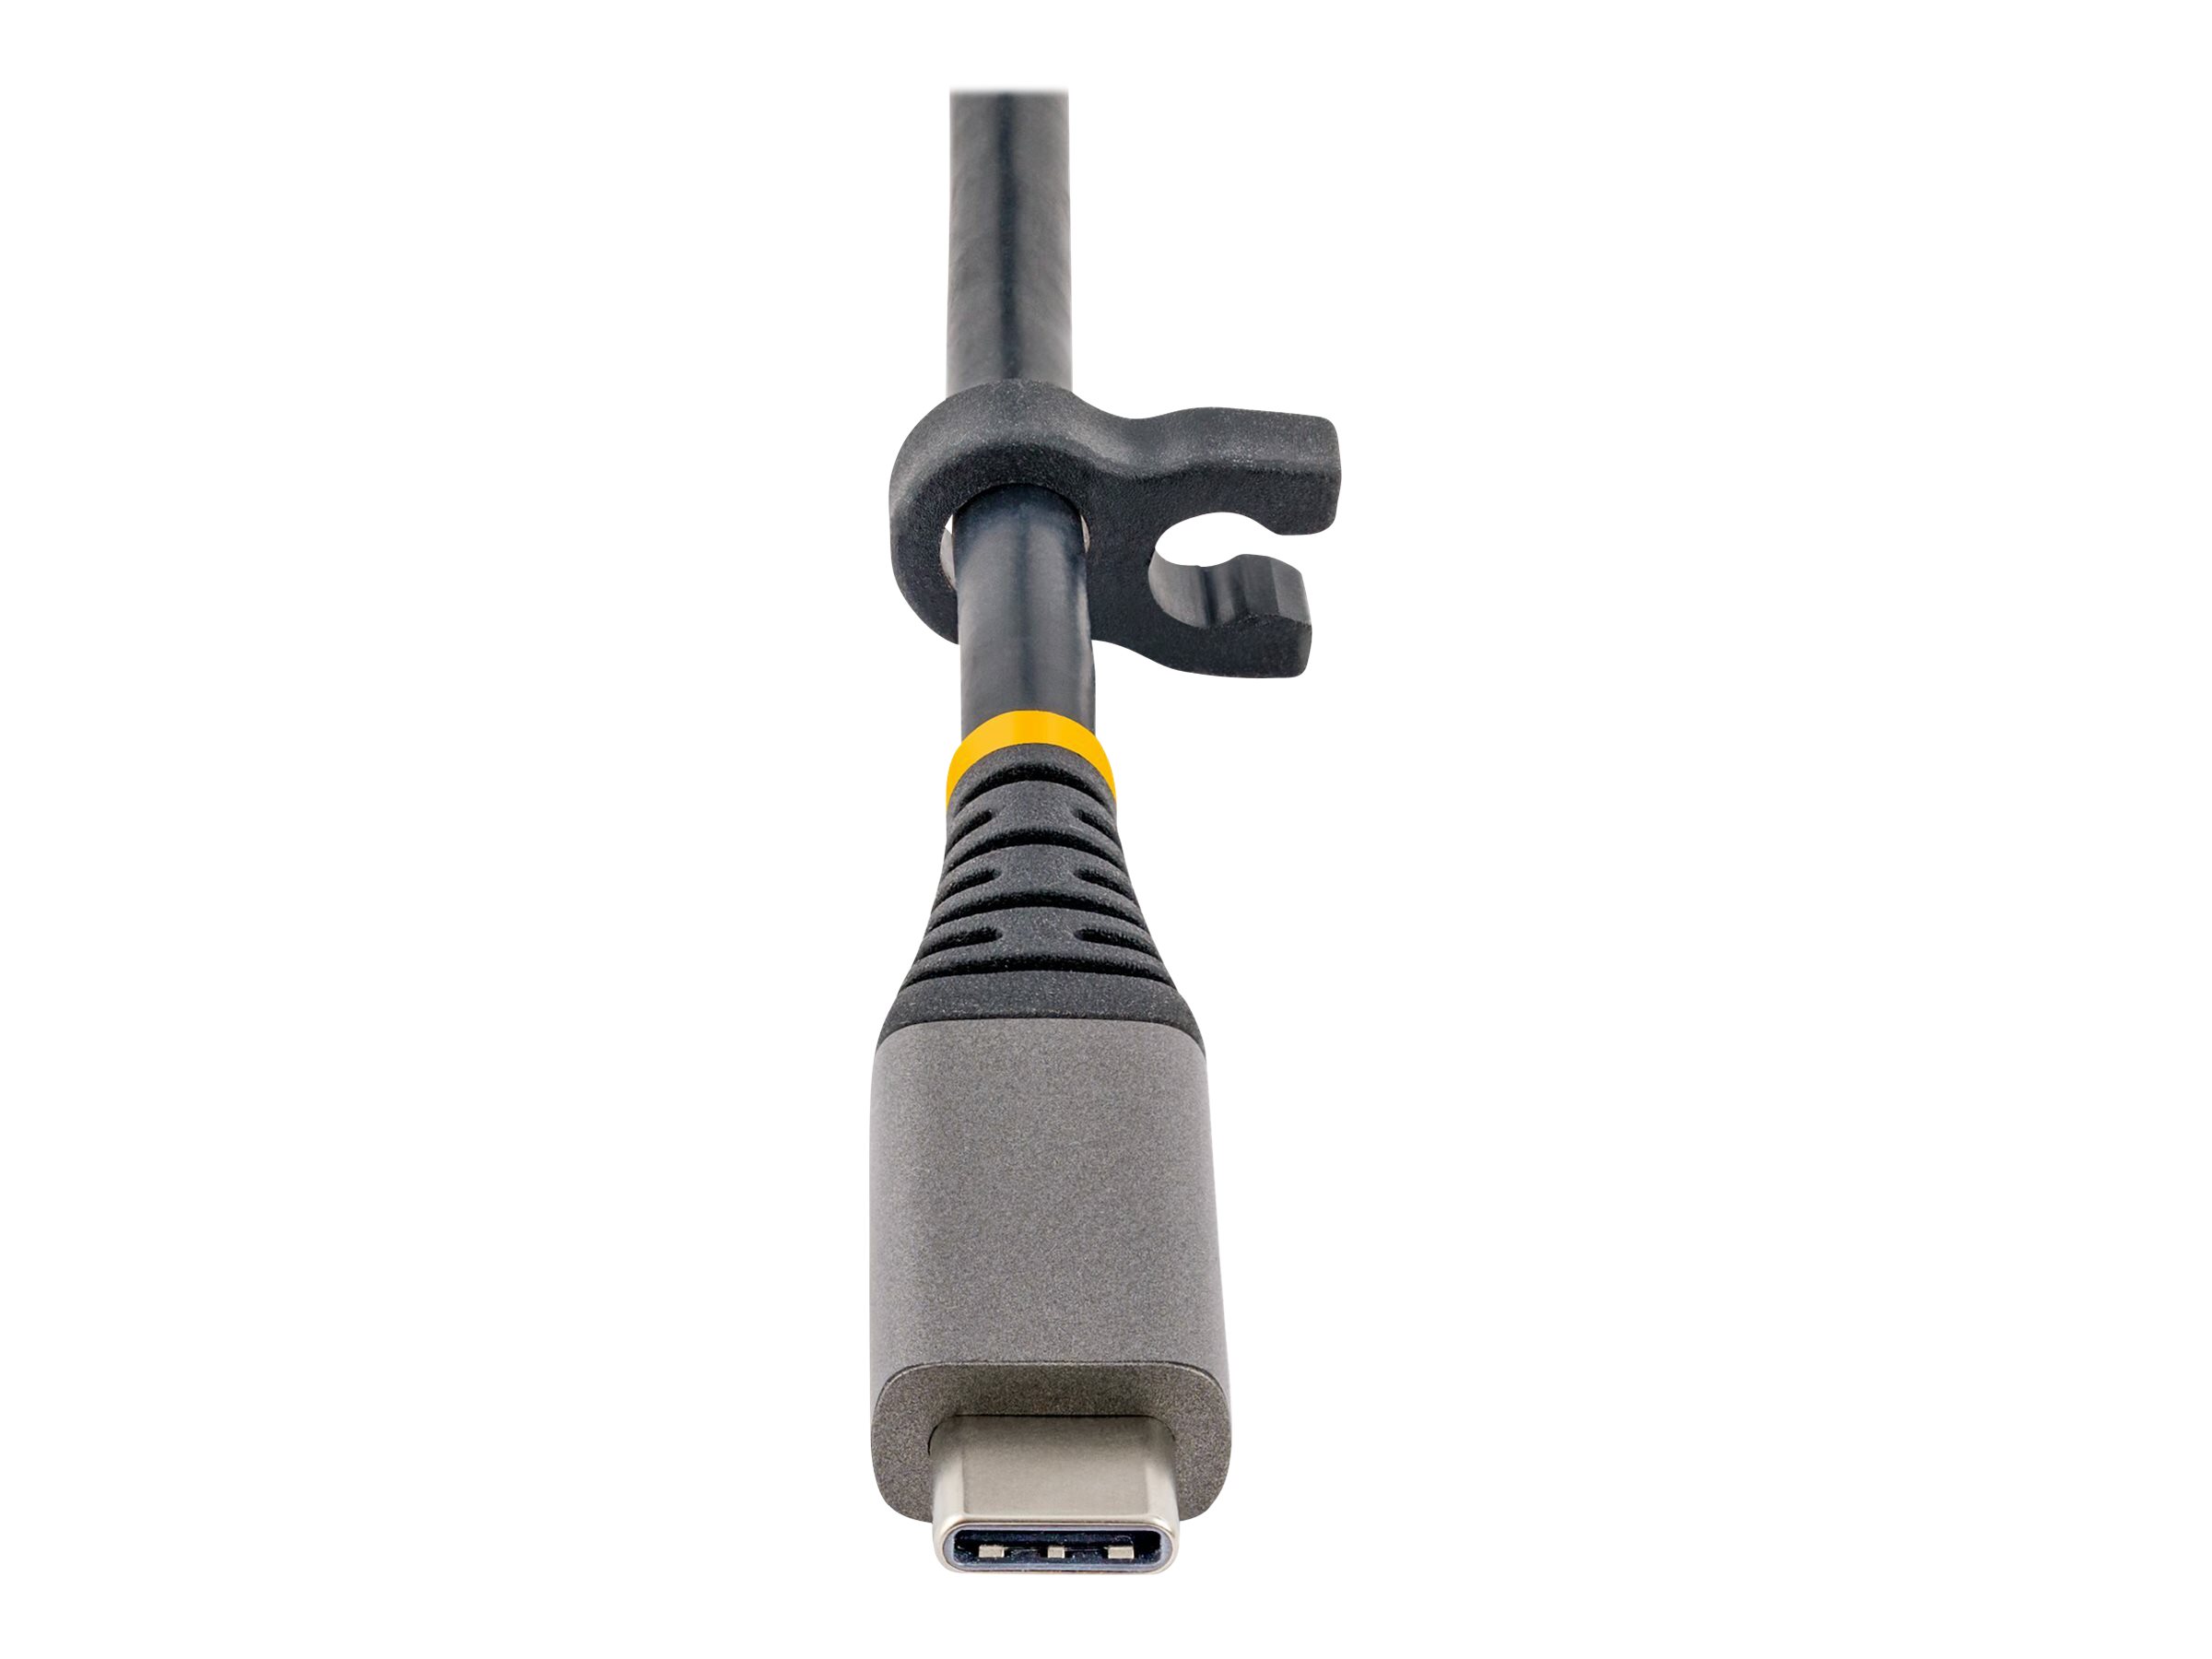 StarTech.com Universal USB C multiport adapter